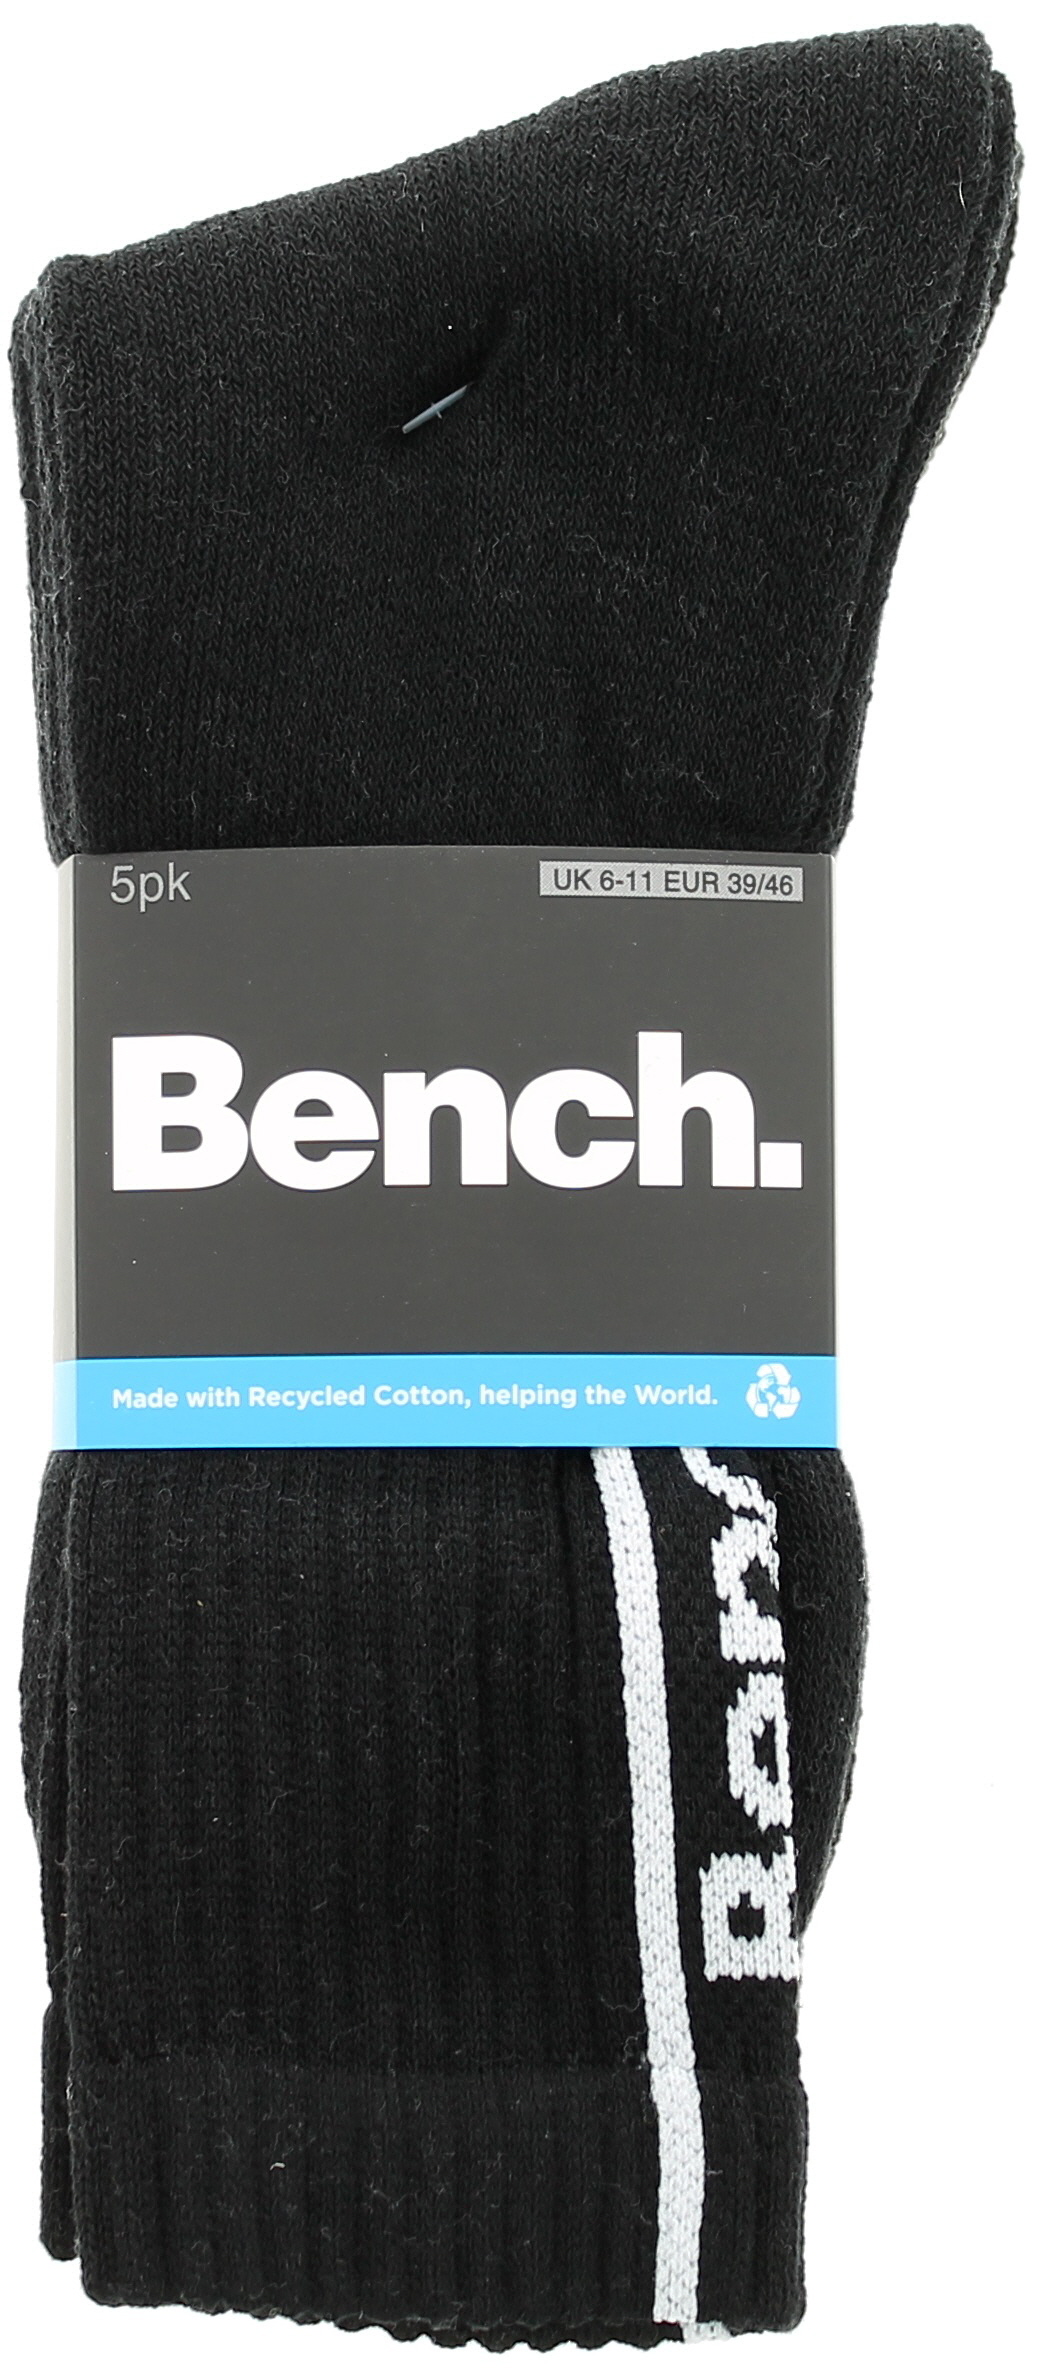 Bench Mens Socks 5pk Medine black